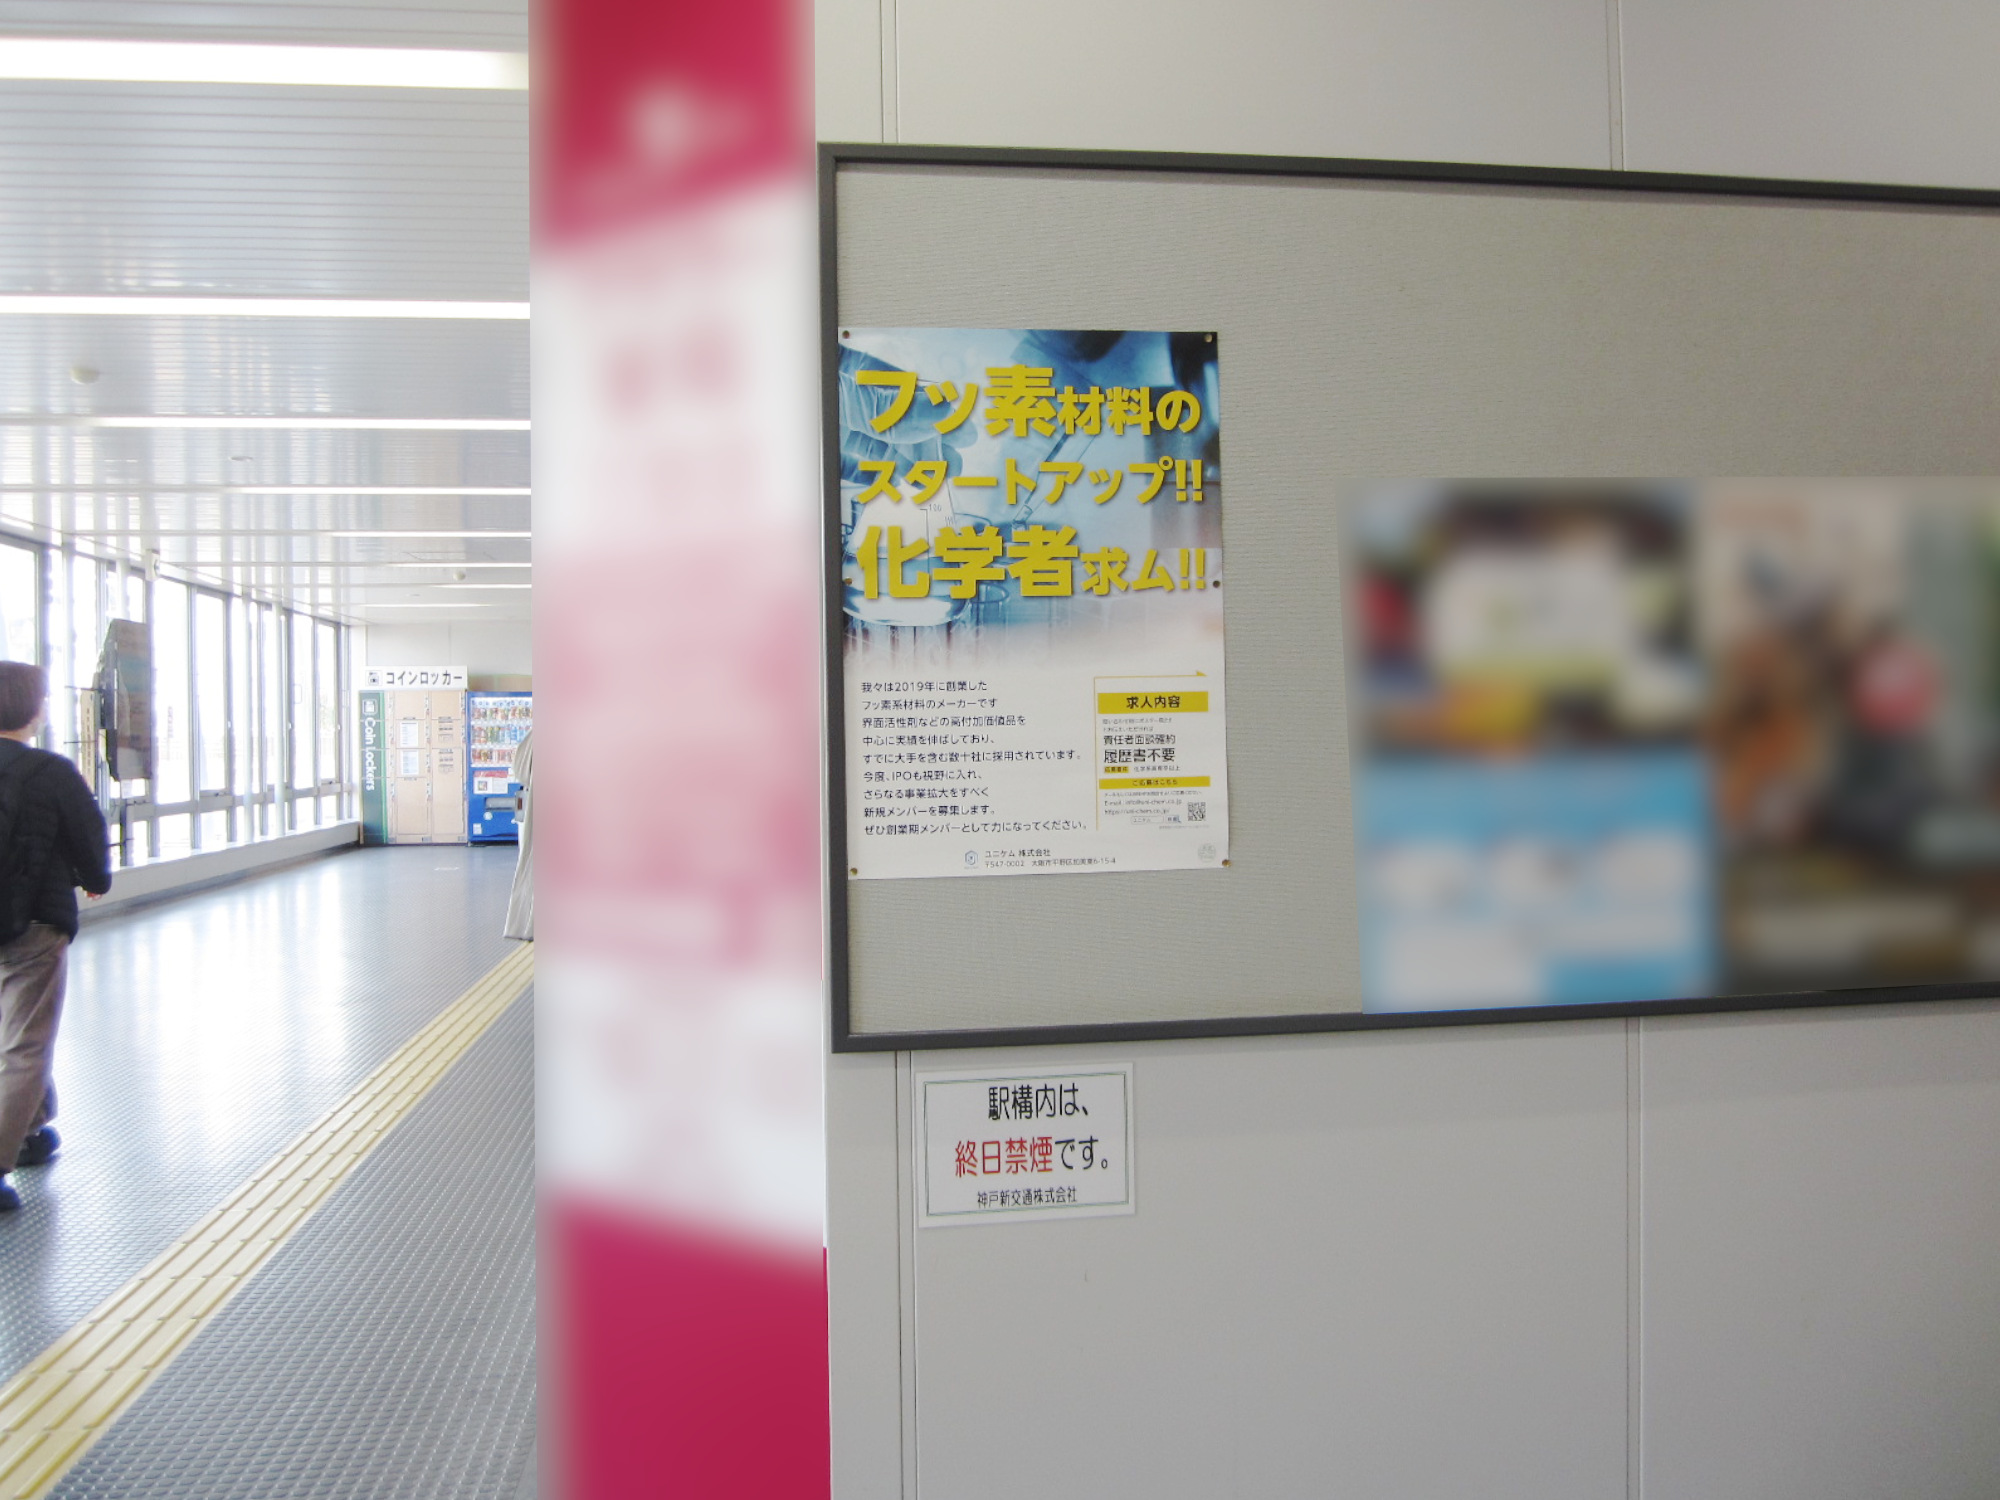 JR丹波口駅・神戸新交通ポートライナー 医療センター(市民病院前)駅 駅ポスター